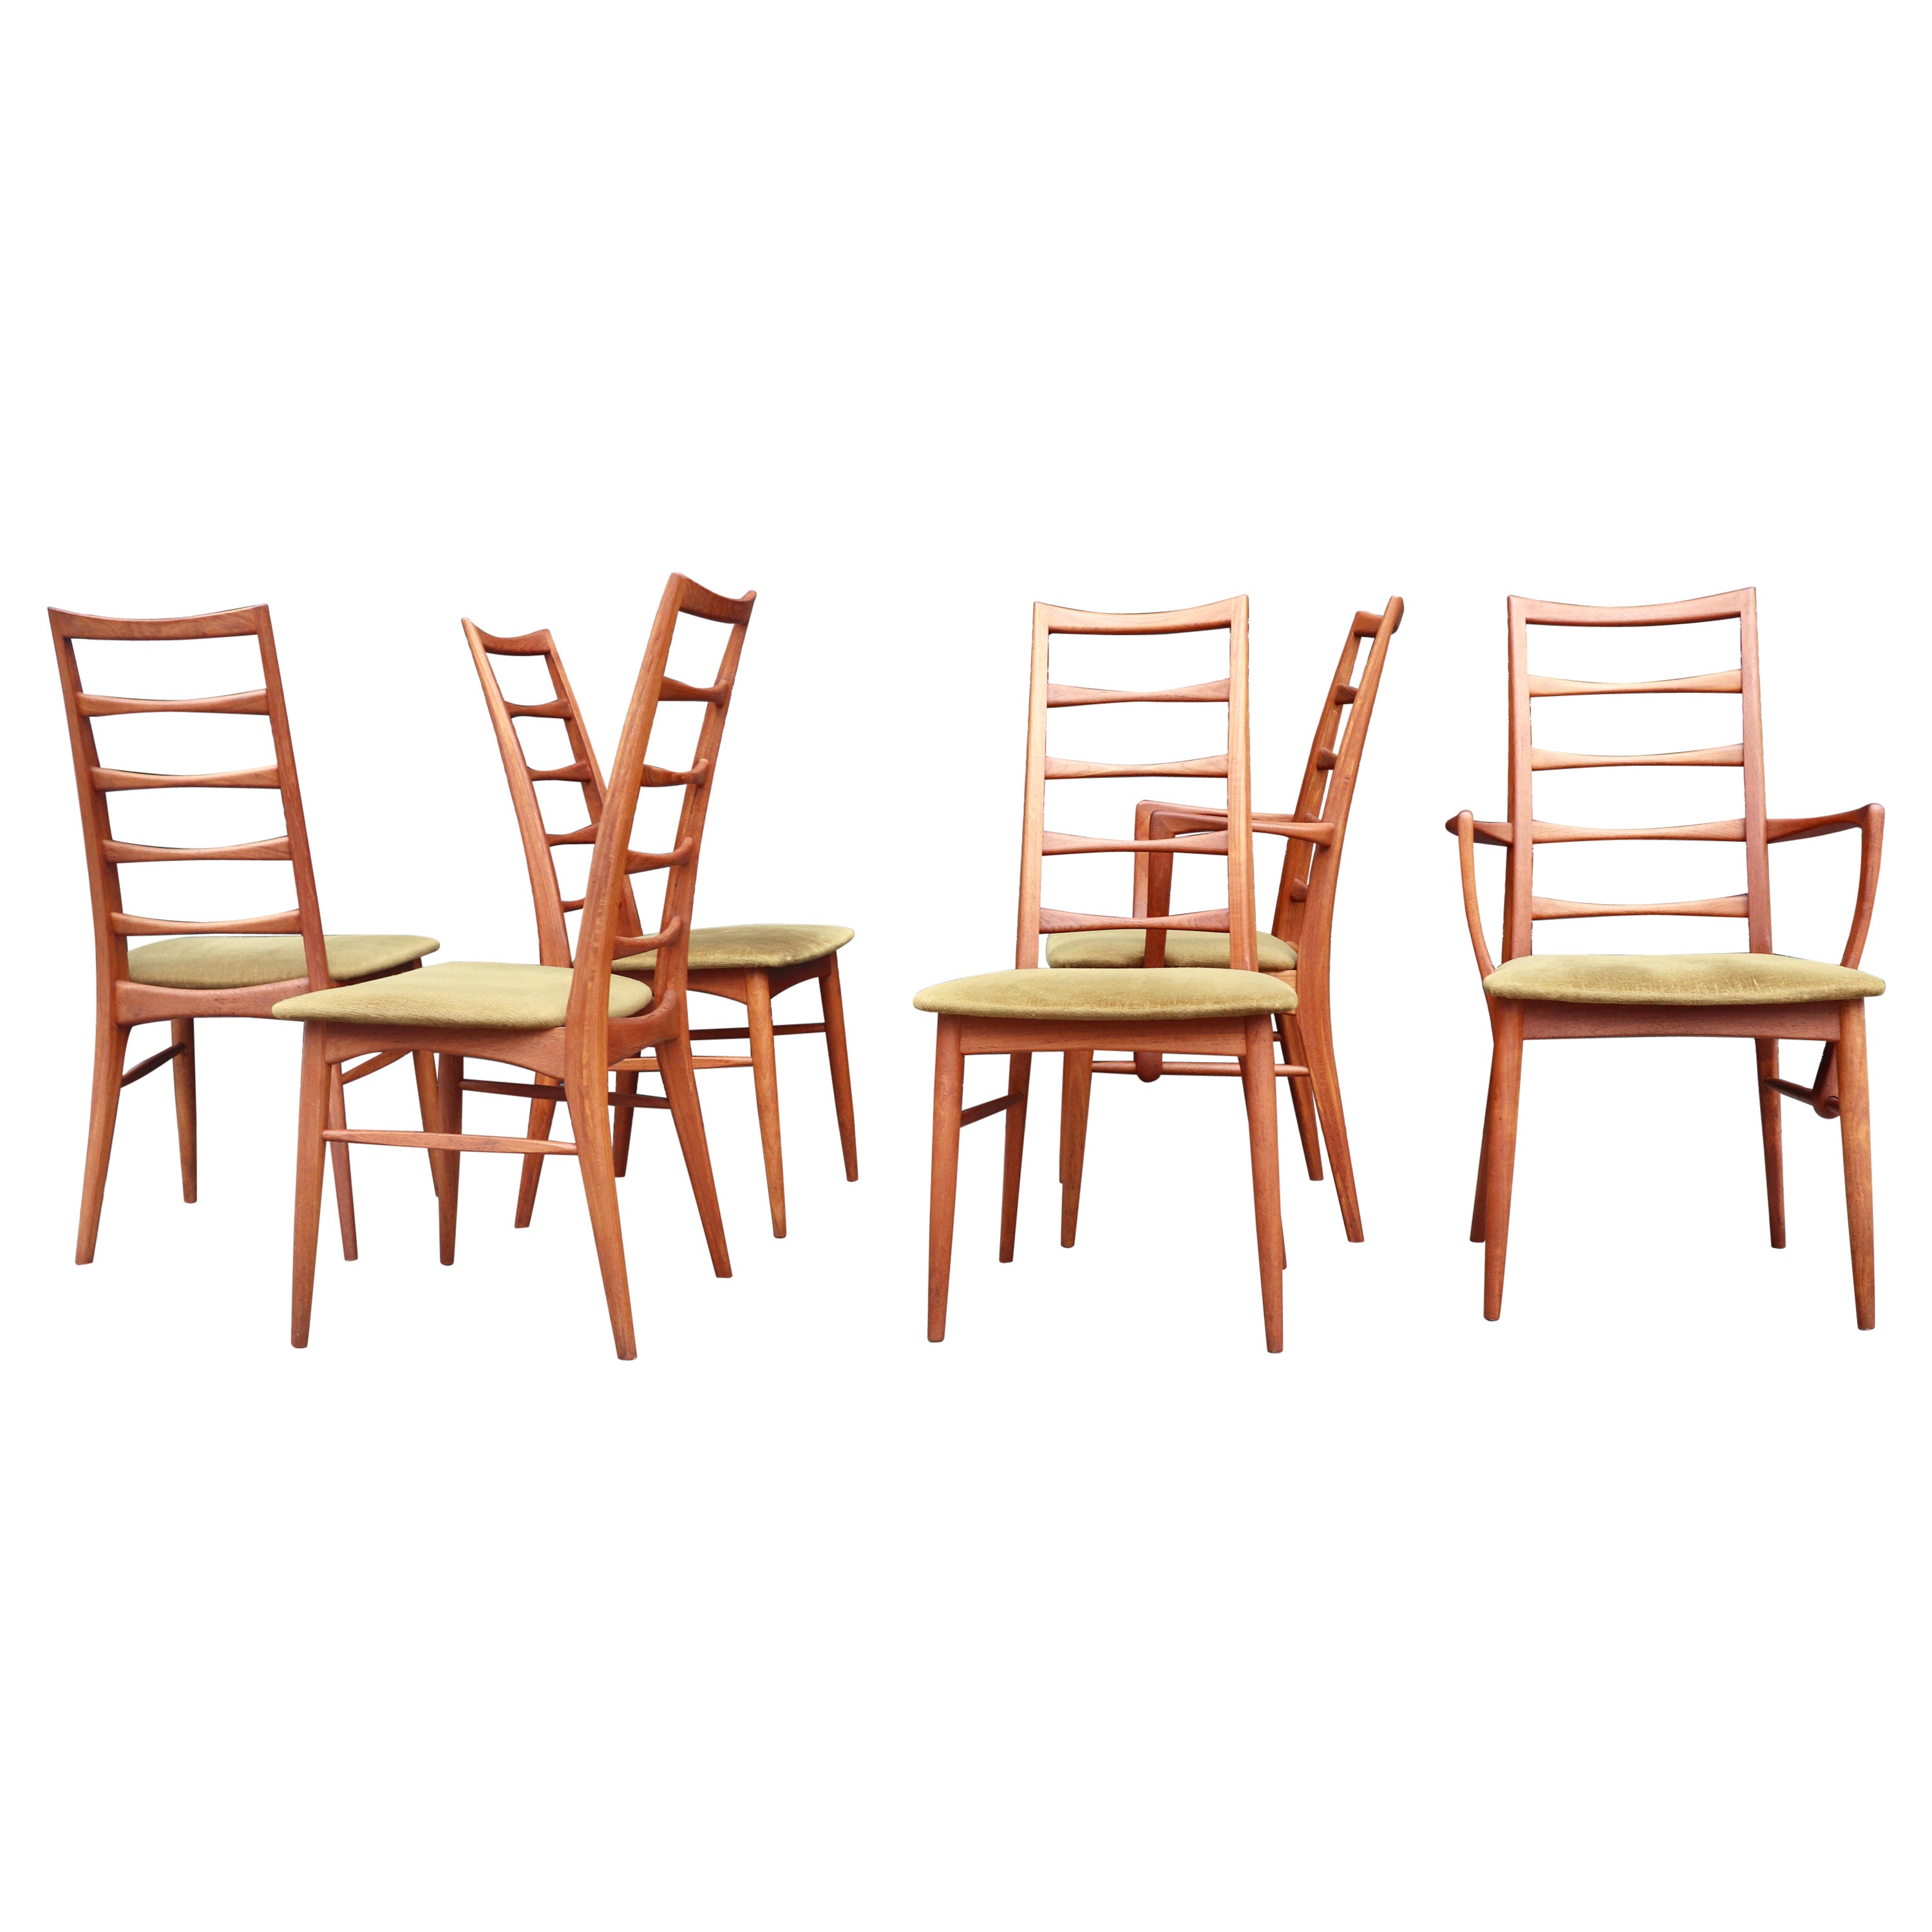 Seis sillas de comedor danesas de teca modelo "Lis" de los años 60, de Niels Koefoed para Hornslet 